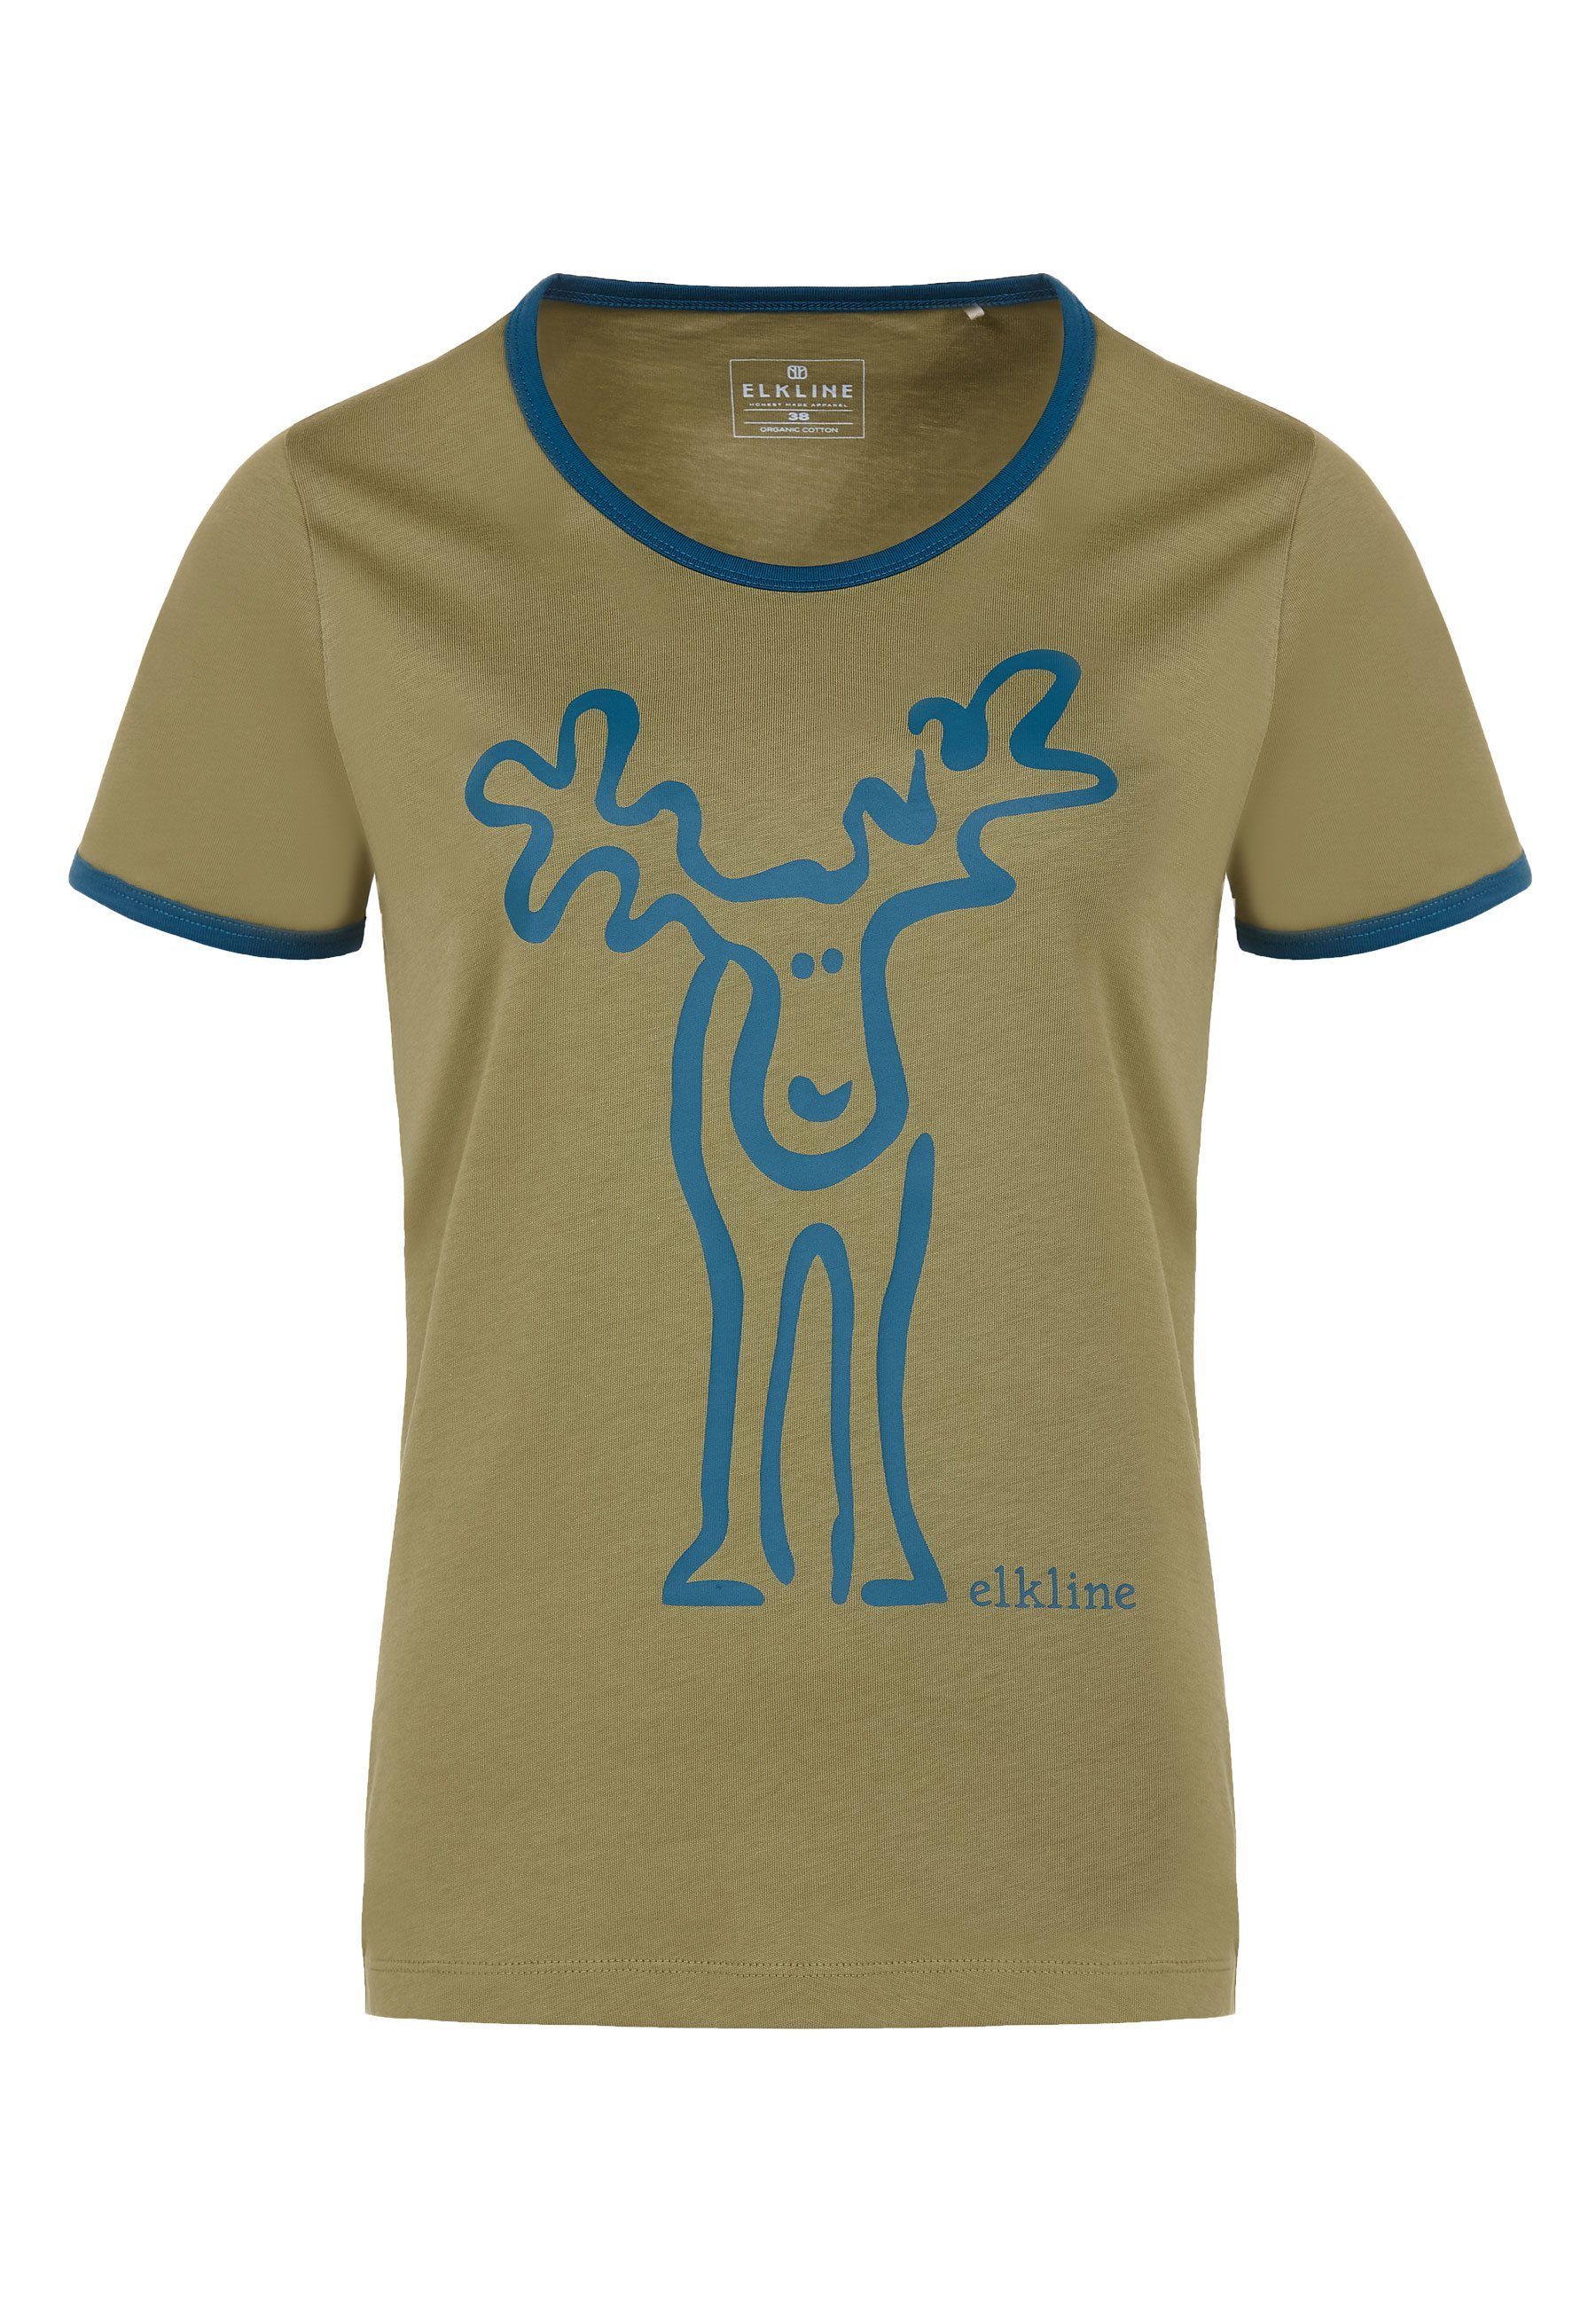 T-Shirt Rudolfine Rücken Retro Print Brust blue avocado coral und Elch Elkline -